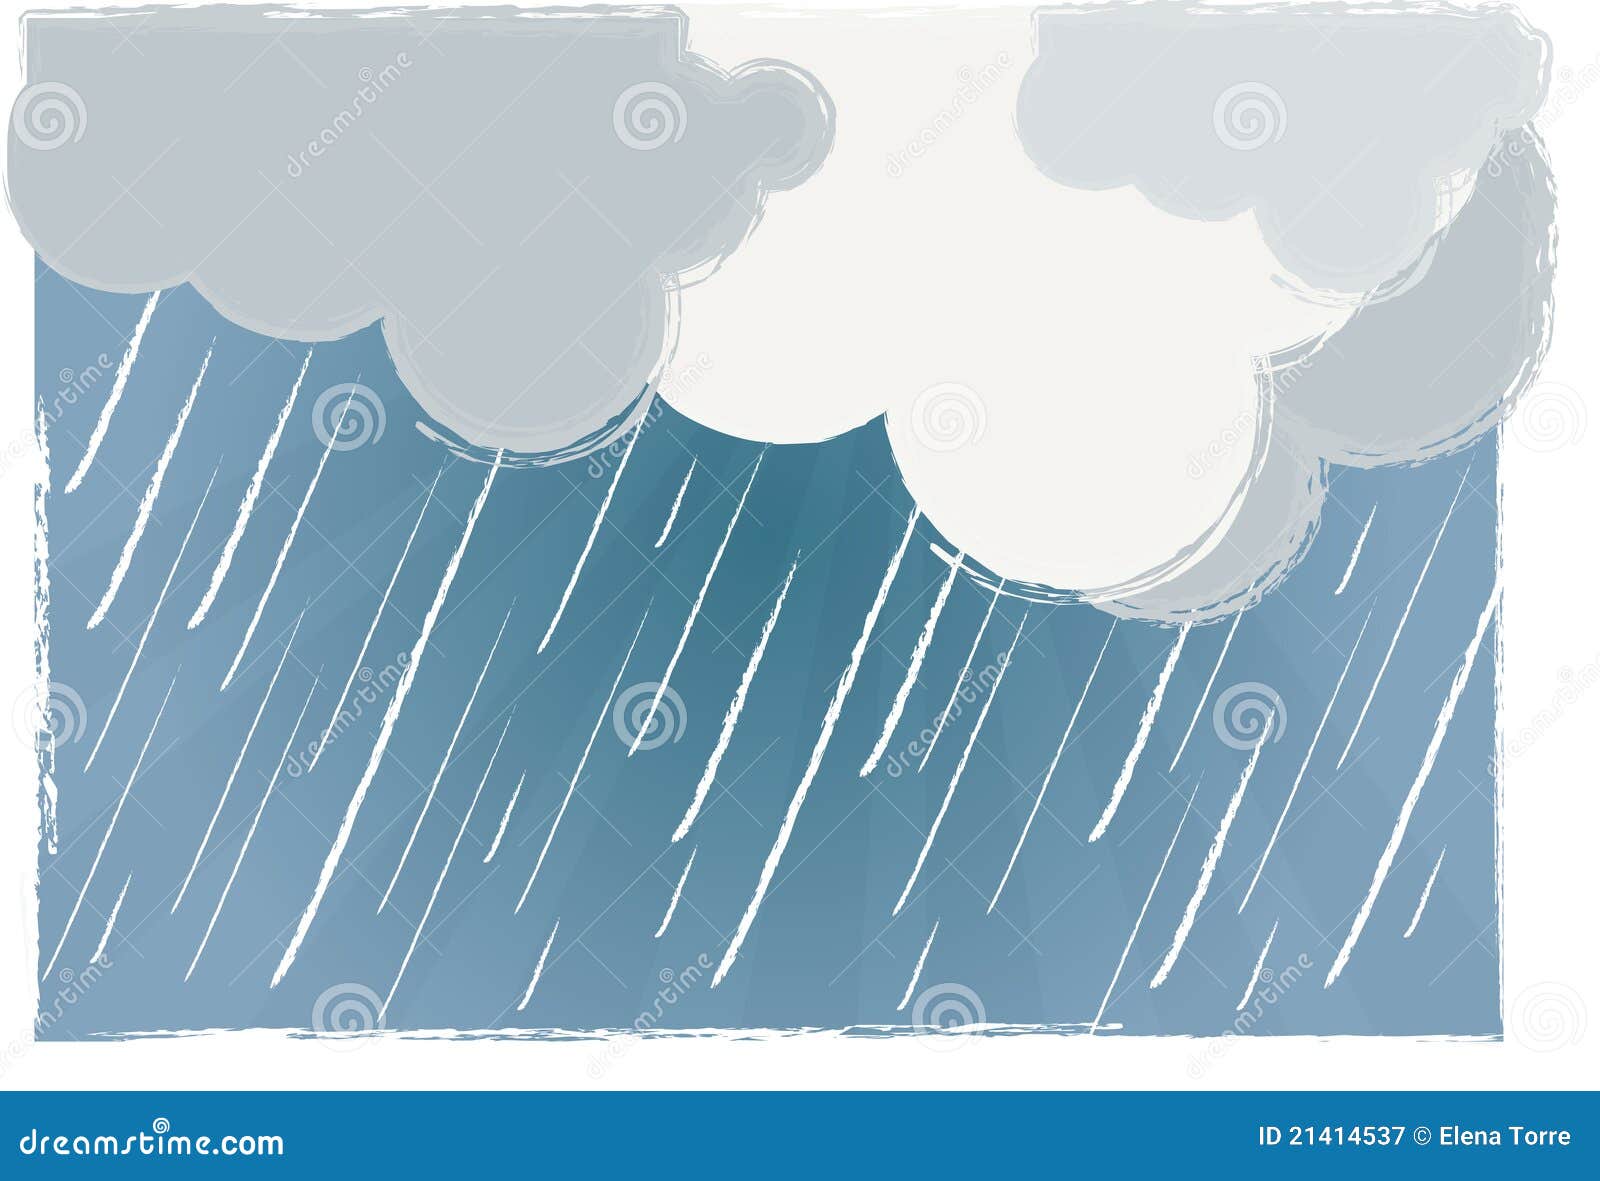 Rainy Day Rain Cartoon Images